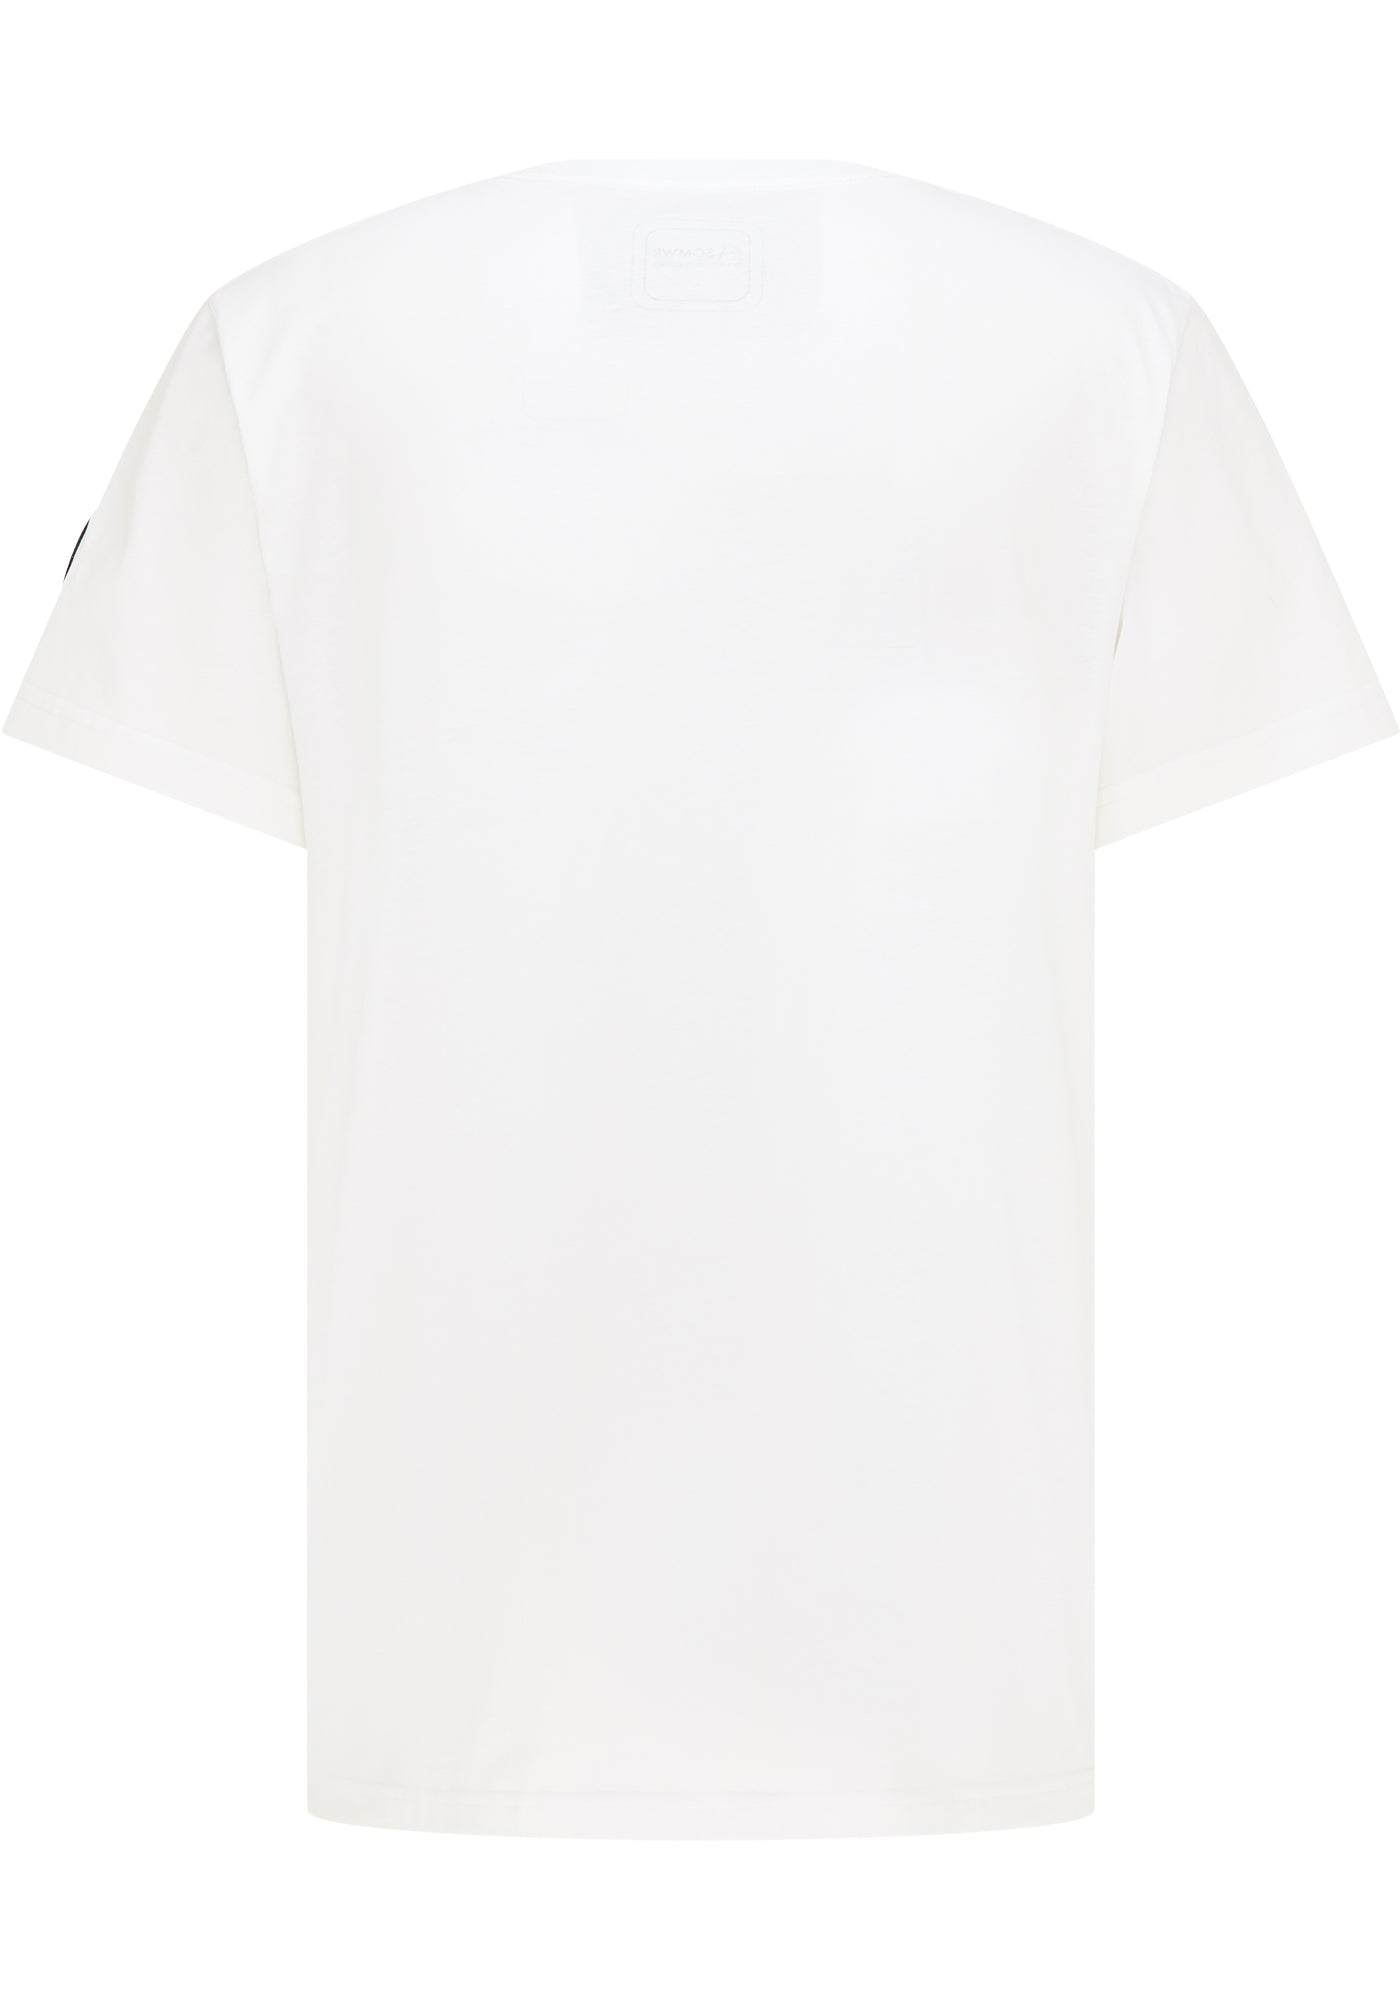 SOMWR INFLUENCER TEE T-Shirt WHT001